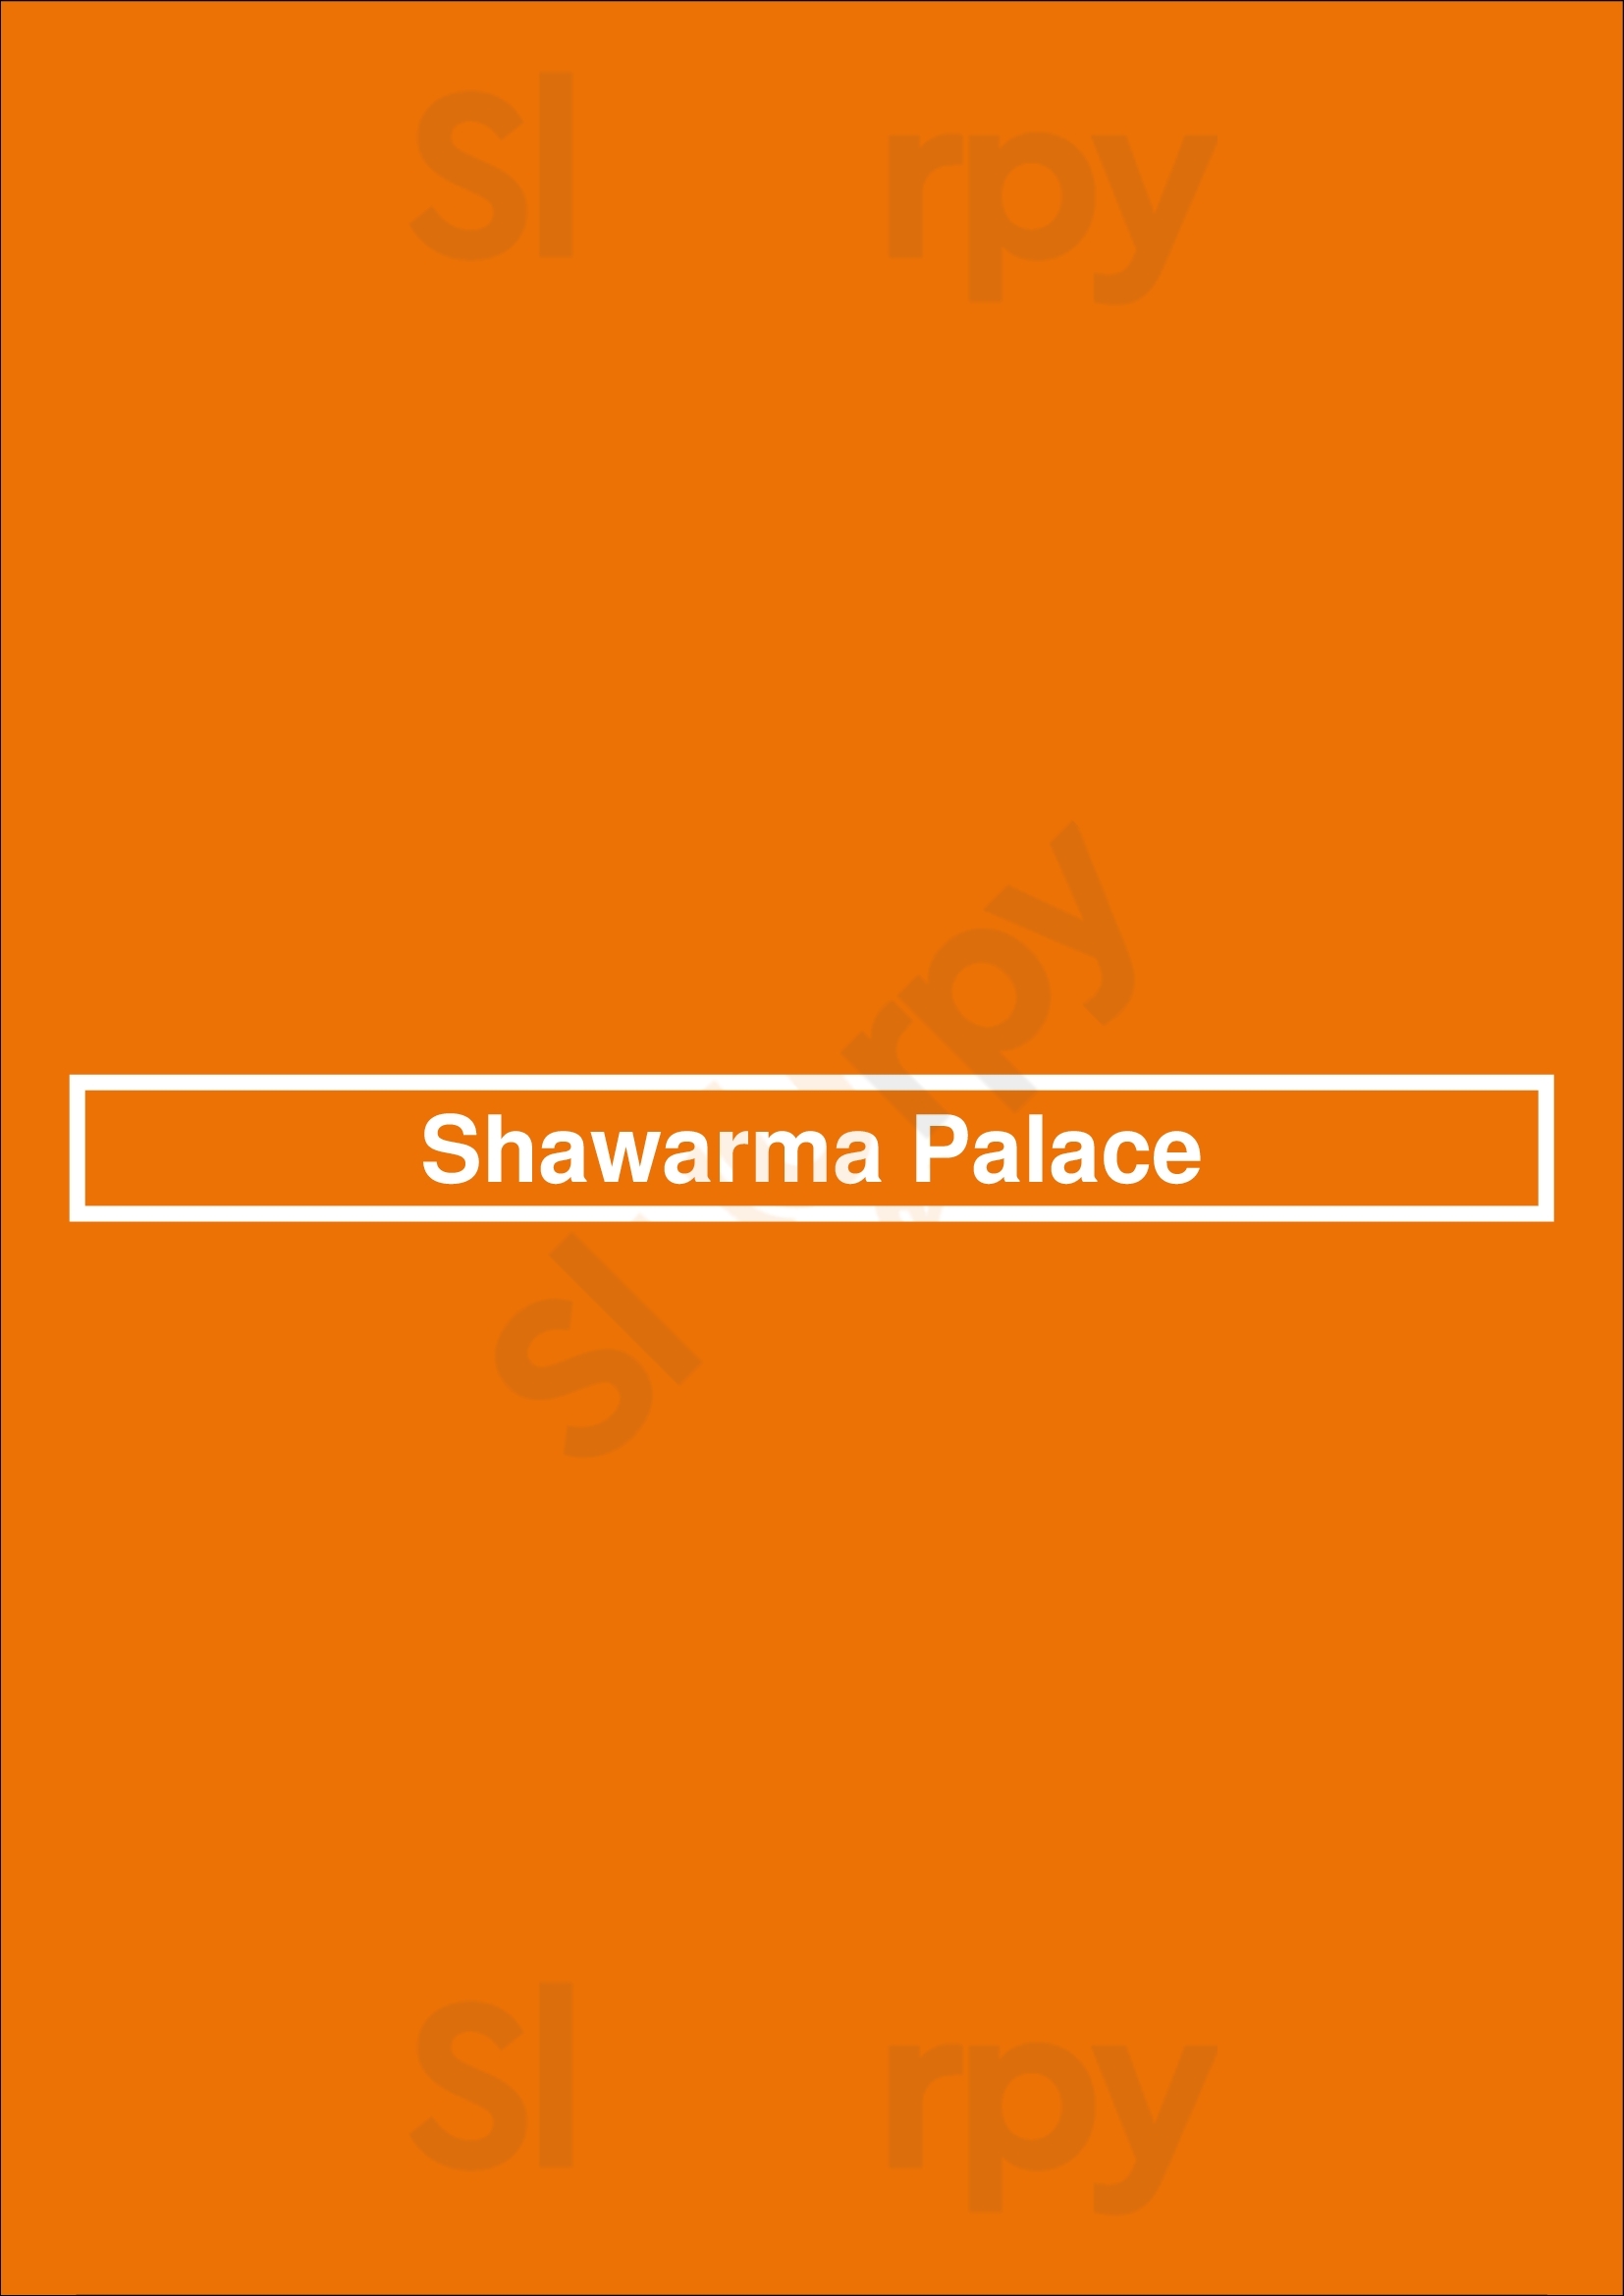 Shawarma Palace Ottawa Menu - 1